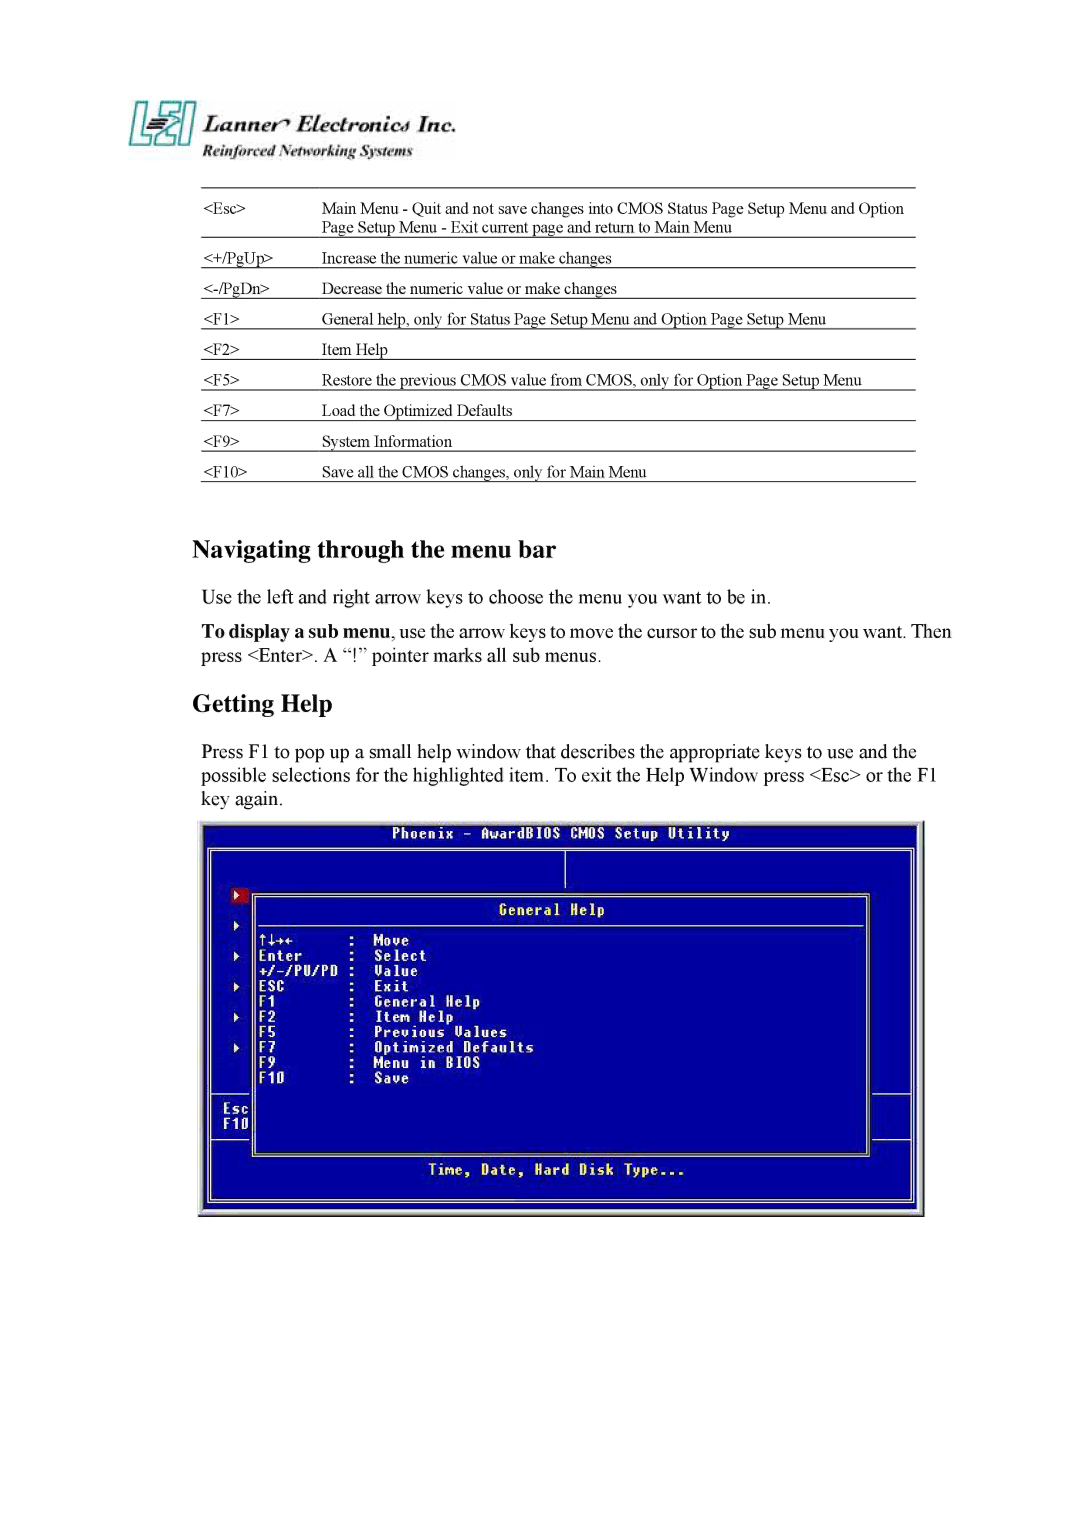 Lanner electronic FW-7870 user manual Navigating through the menu bar, Getting Help 